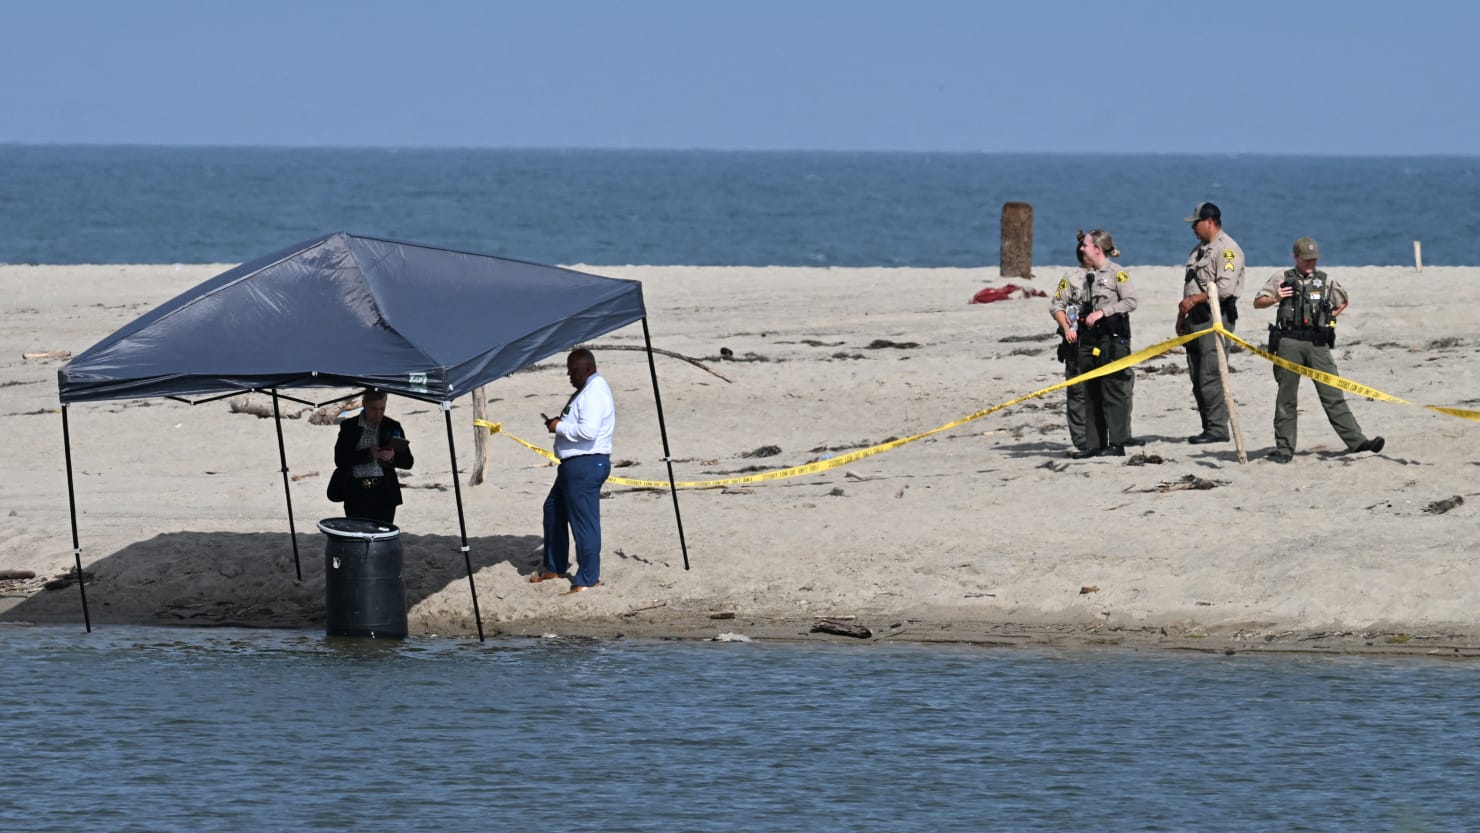 Naked Body Found Stuffed Inside Barrel by Malibu Lifeguard Identified image pic image